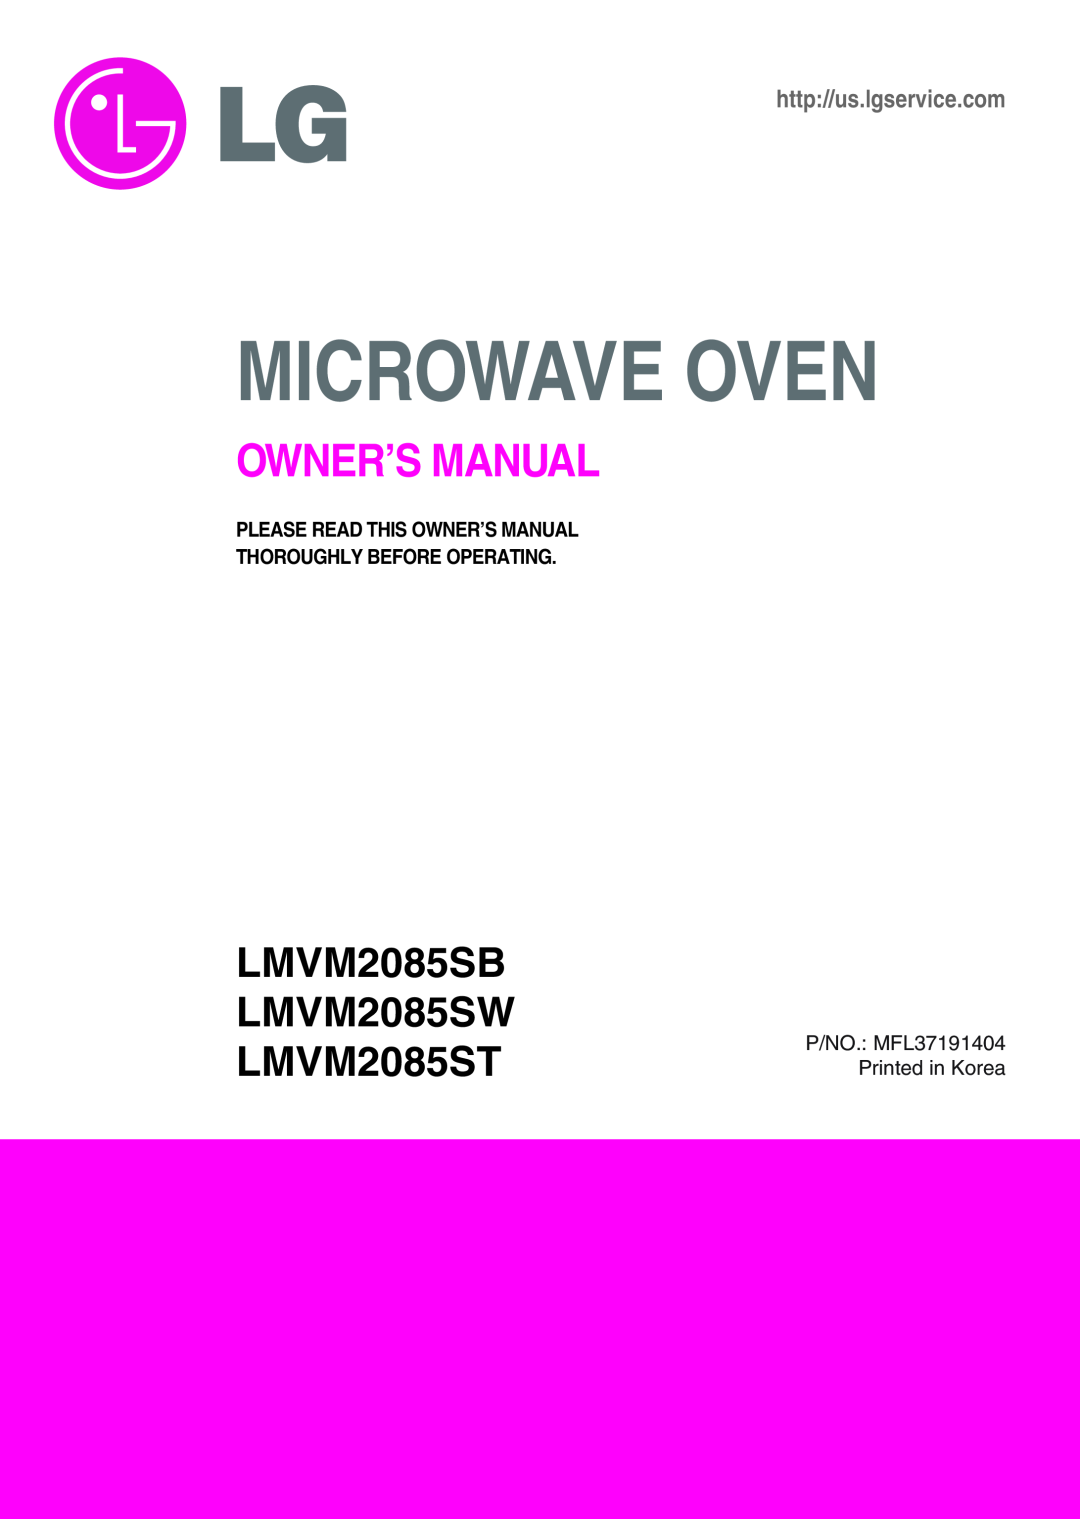 Minolta owner manual LMVM2085SB LMVM2085SW LMVM2085ST, Microwave Oven, http//us.lgservice.com 